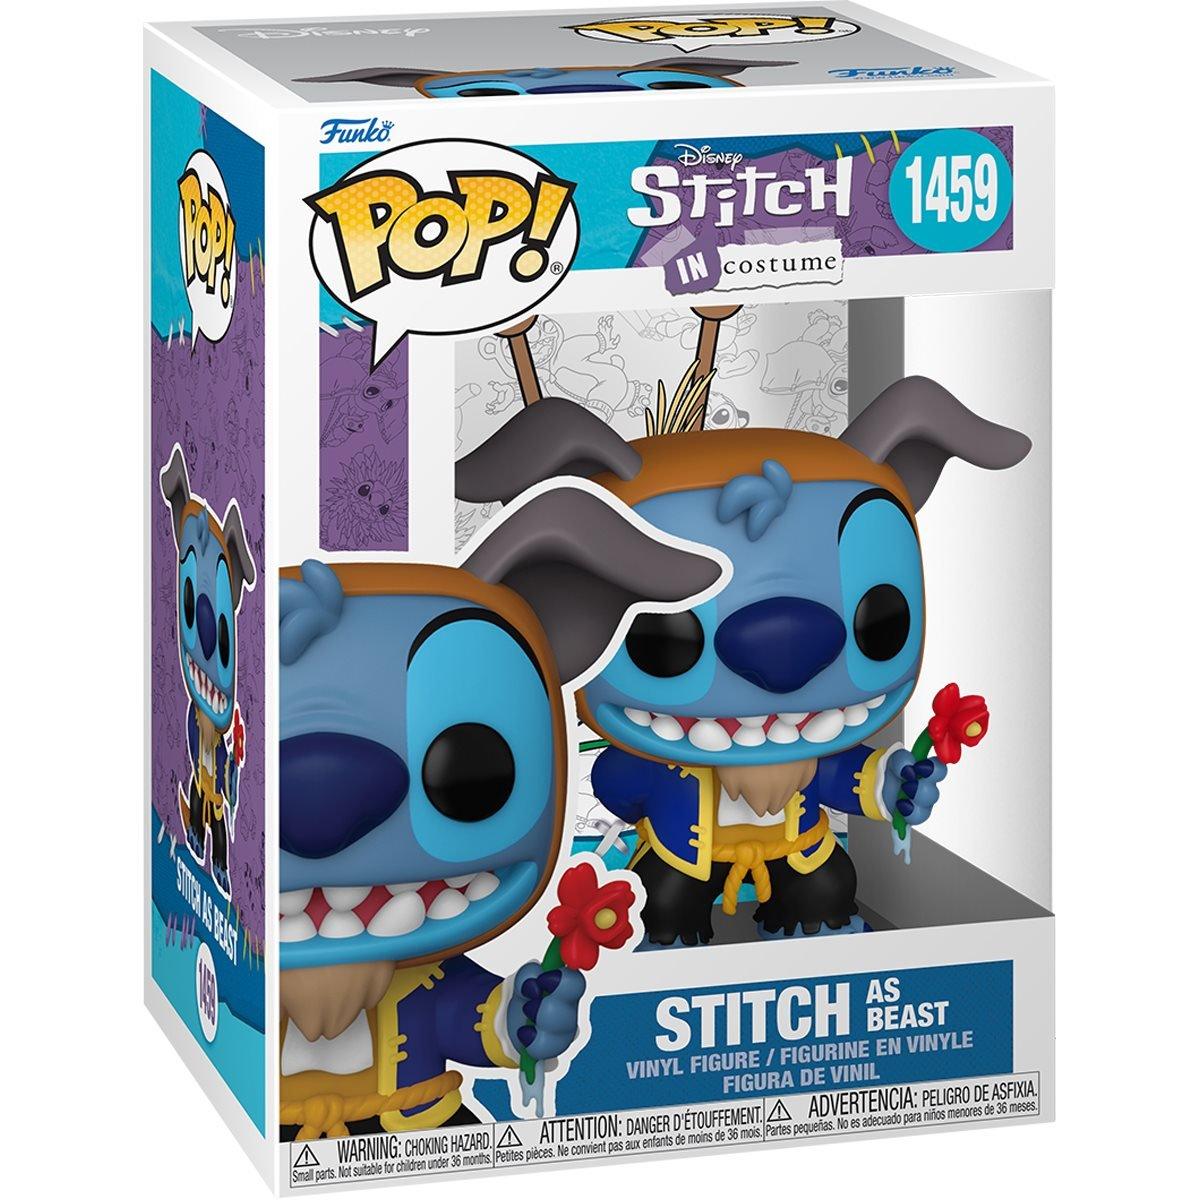  Lilo & Stitch - Costume Stitch as Beast Pop! Vinyl - Funko - Titan Pop Culture